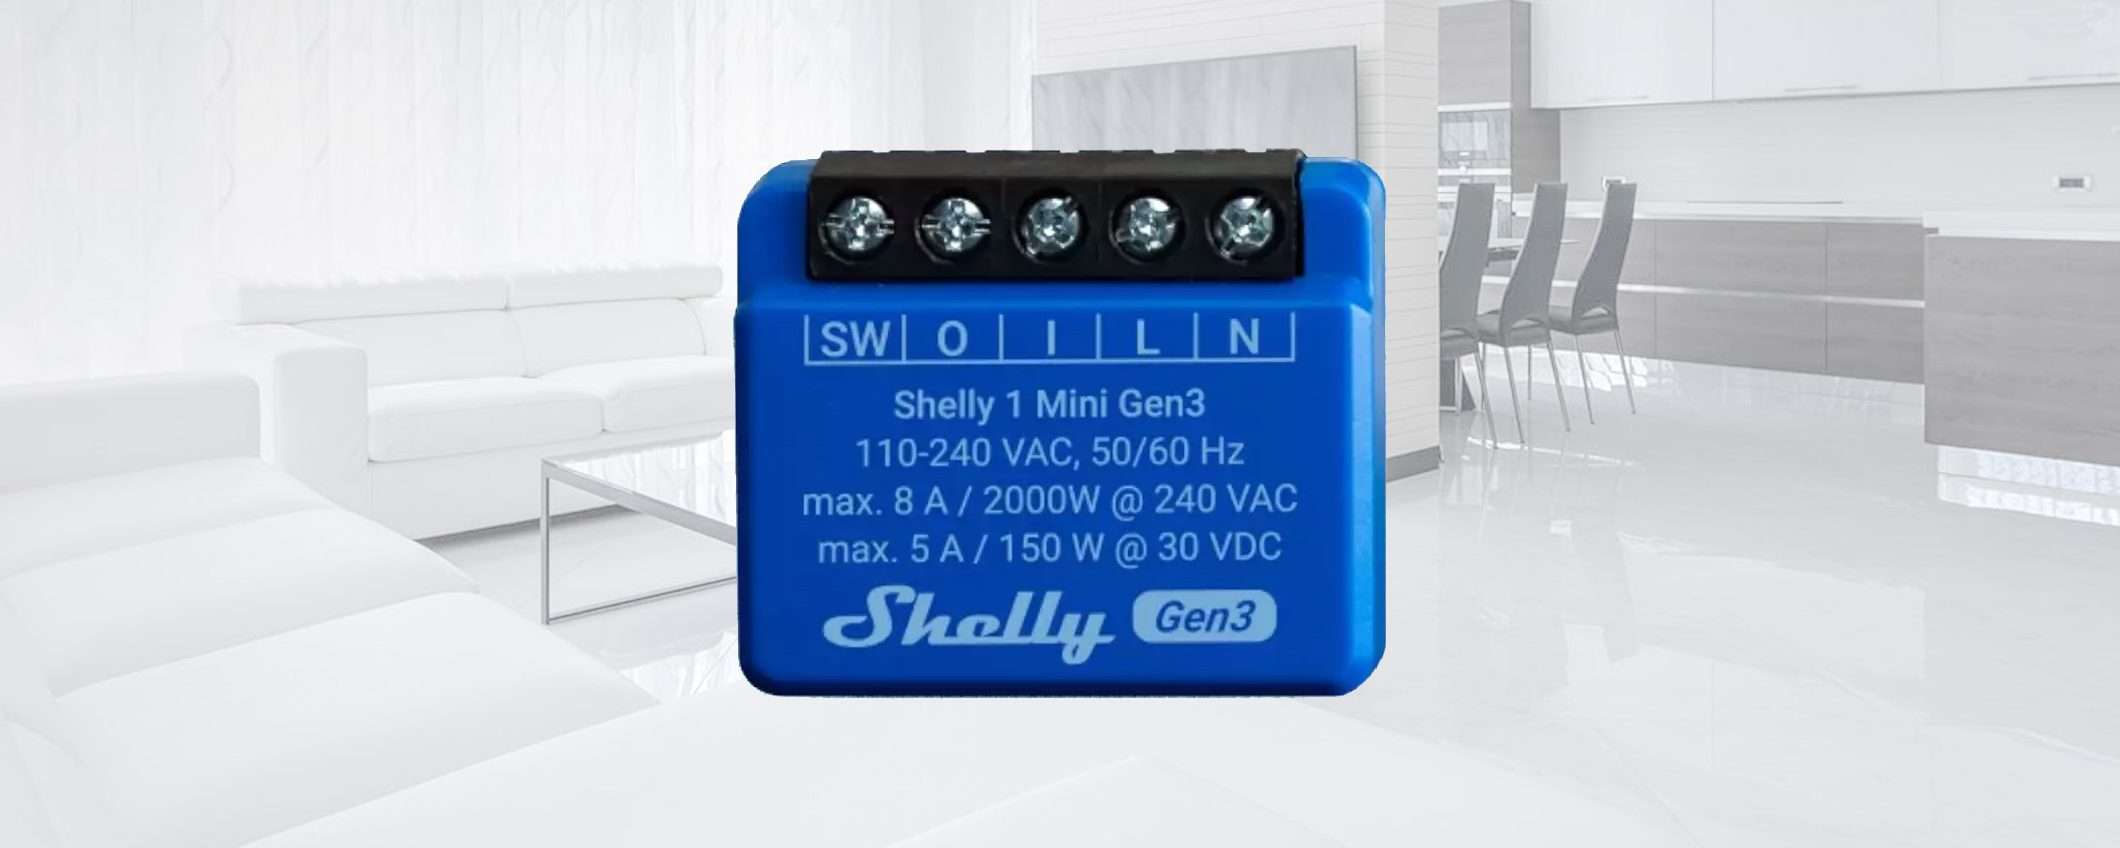 Shelly Plus 1 Mini Gen3 a -50%: tuo a METÀ PREZZO